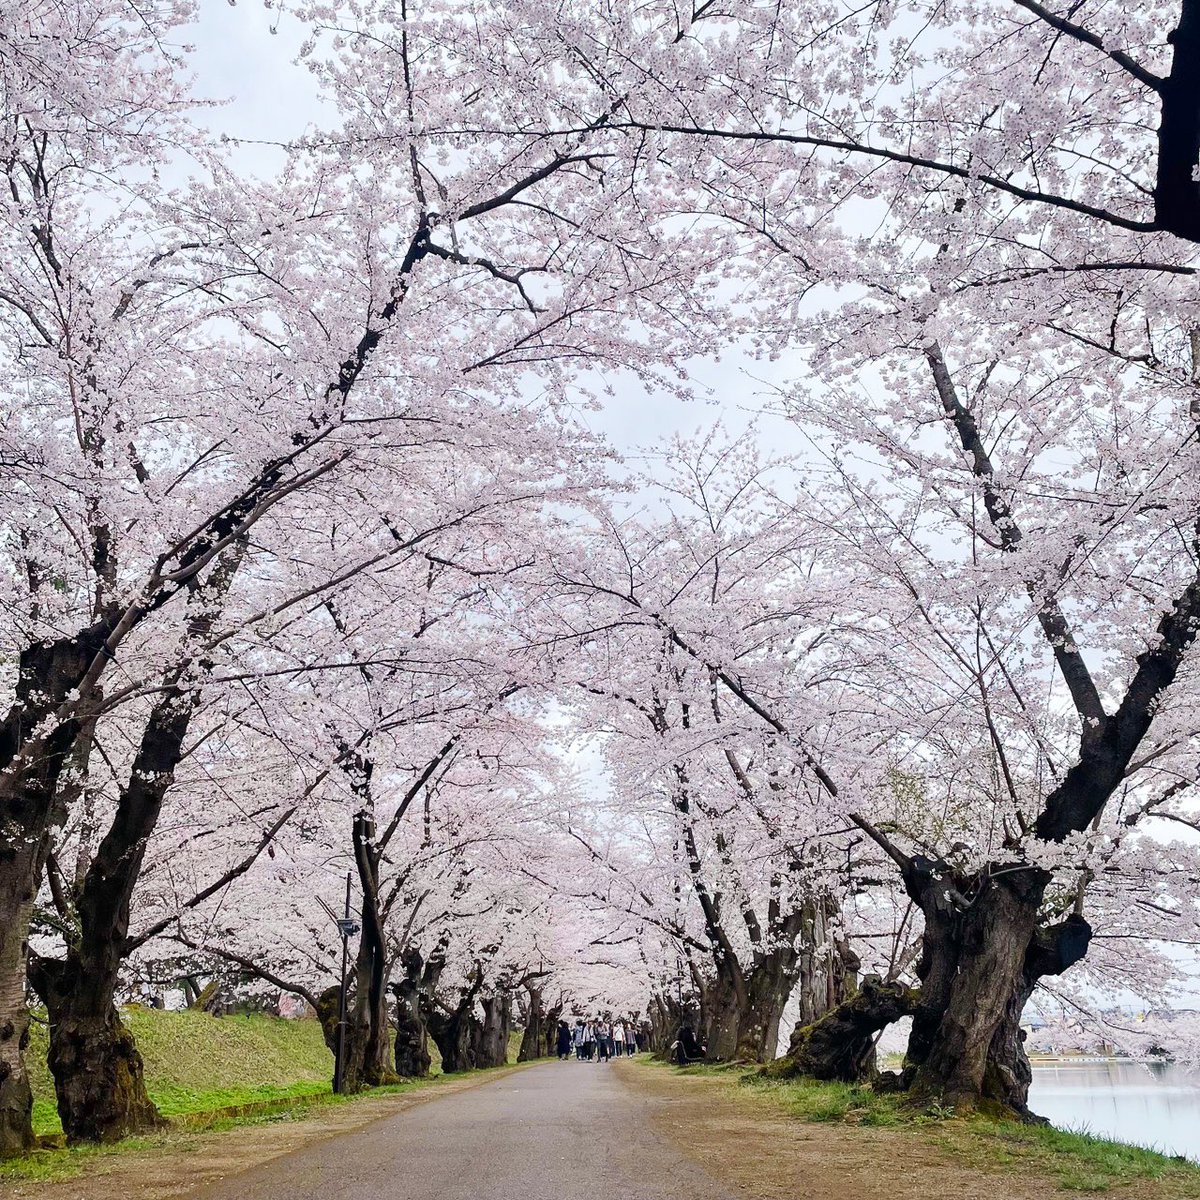 【弘前さくらまつり開幕！】
aomori-artsfest.com

#青森アートフェス
#aomori_artsfest

4月12日、弘前さくらまつりが開幕！今年から従来のお花見スタイルを取り戻し、本日の弘前公園は、雨にもかかわらず多くの人が訪れました。
雨に打たれる桜が湖面にゆらゆらと幻想的に揺れていました。